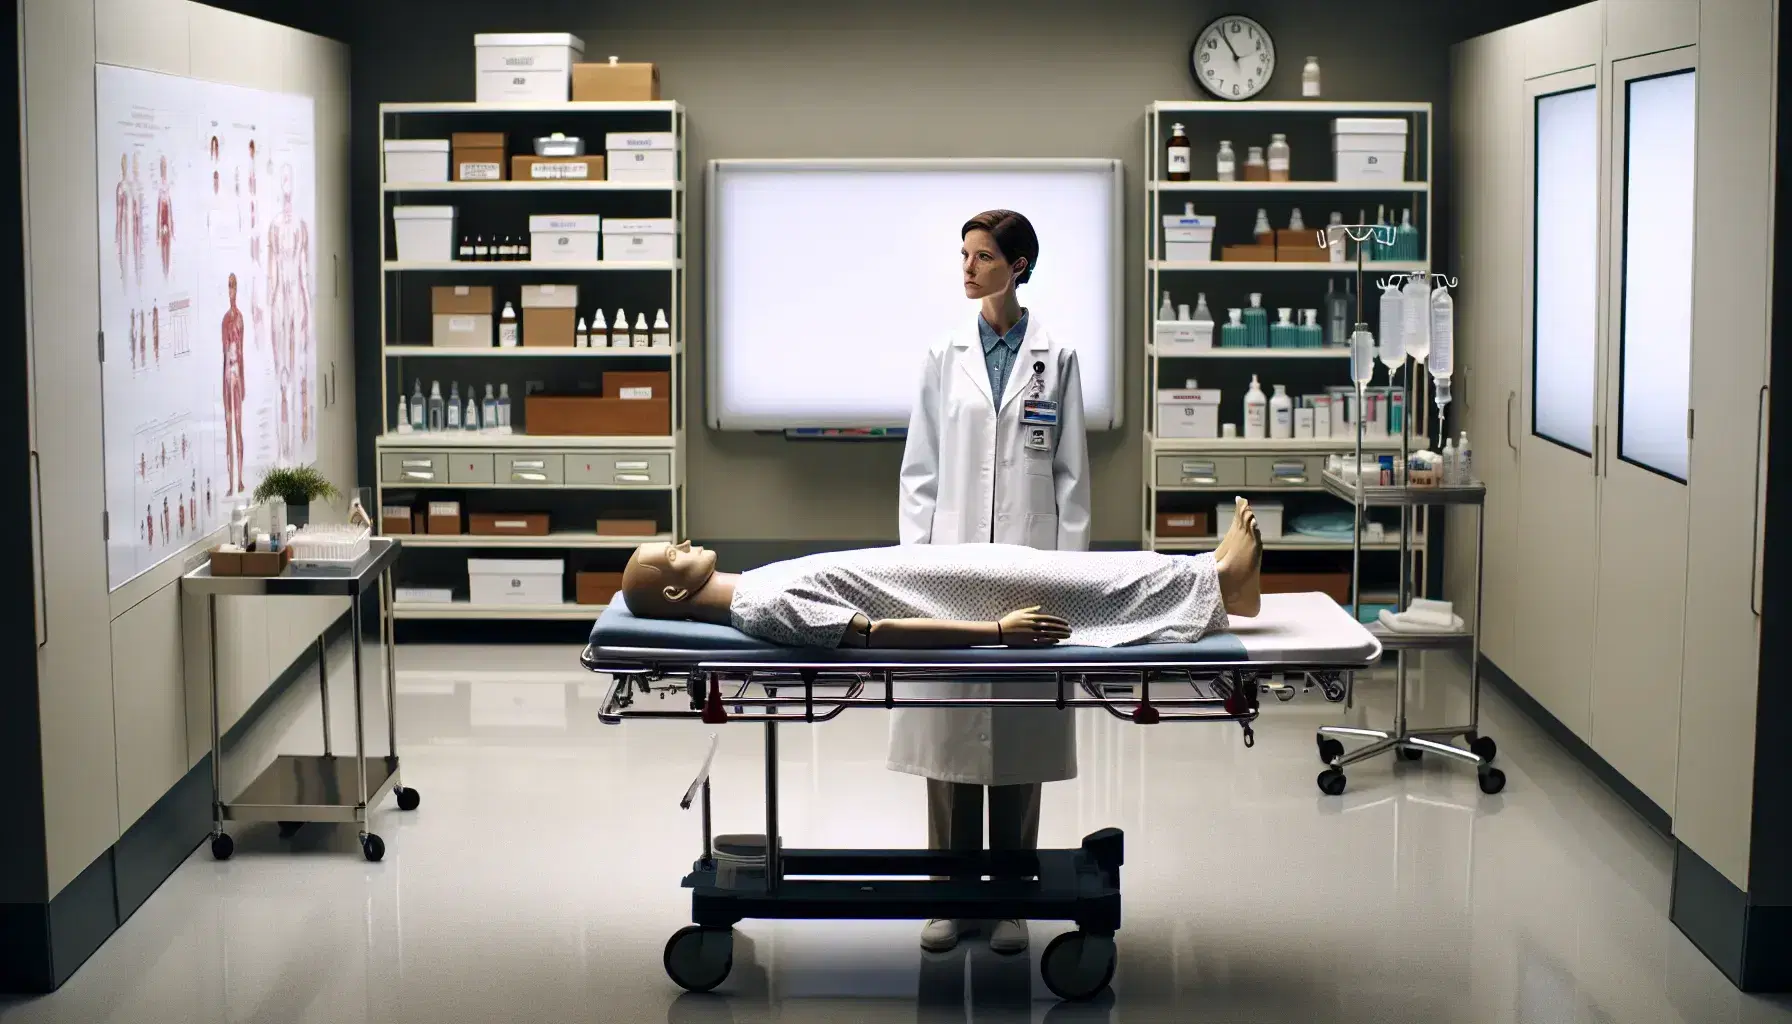 Mujer en bata de laboratorio practicando técnicas de cuidado de pacientes en un maniquí de enfermería sobre una camilla, con un fondo de pizarra y estantes con material médico.